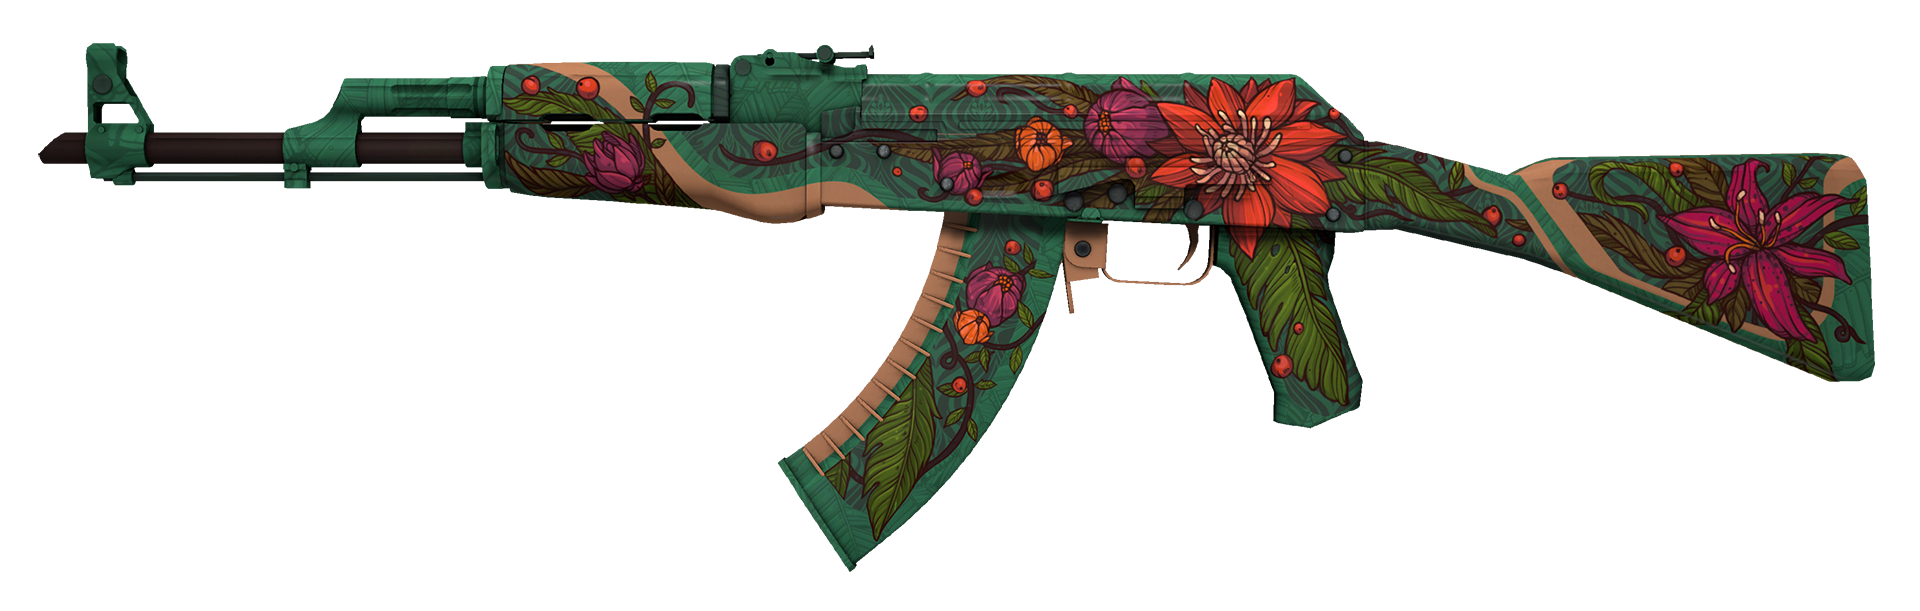 AK-47 Wild Lotus Large Rendering